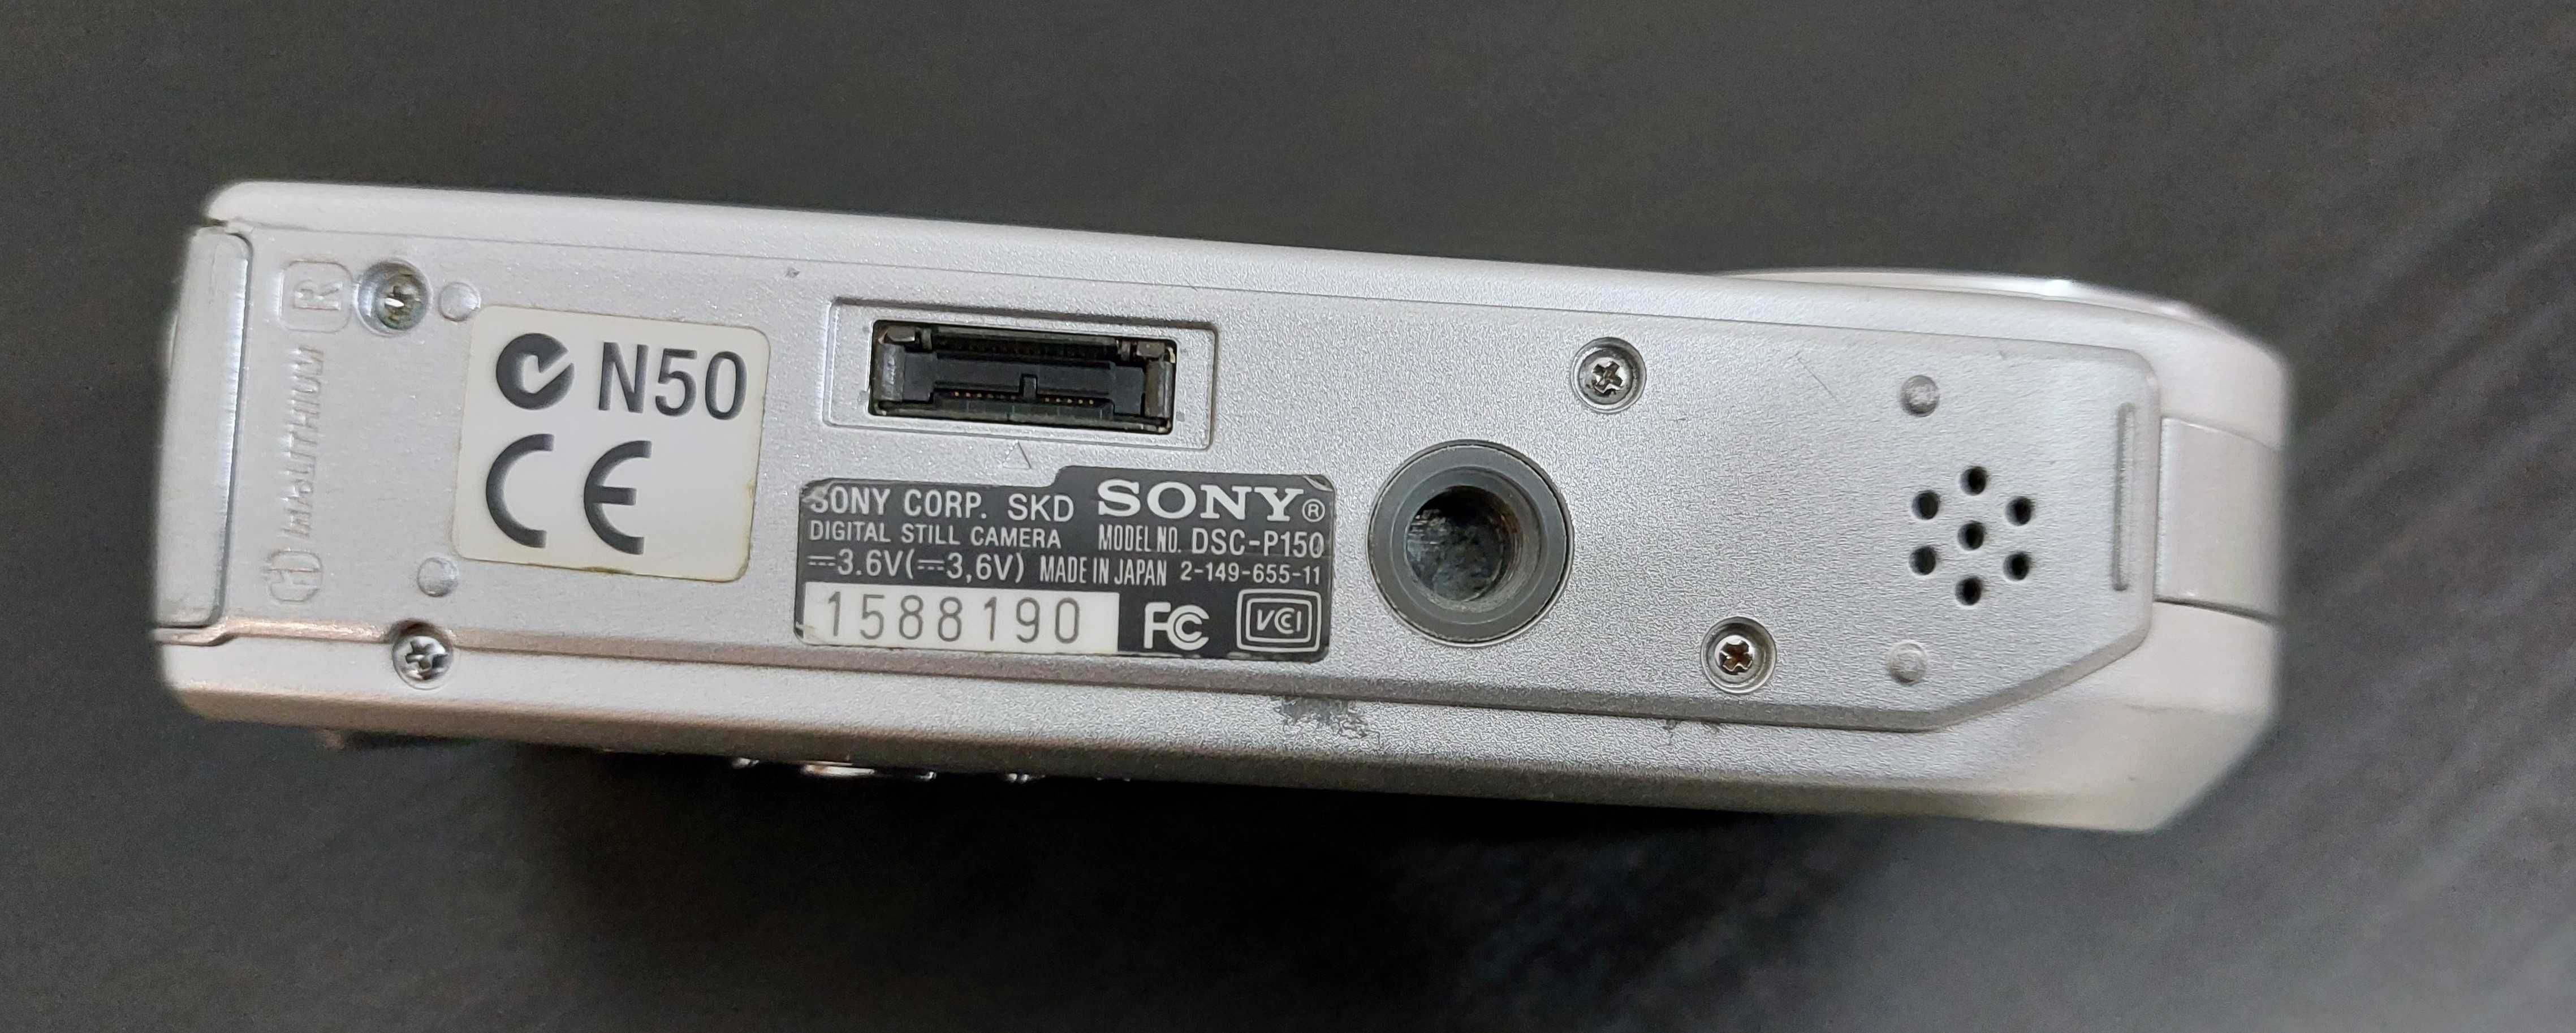 Máquina Fotográfica e Filmar Cyber-Shot Sony 7.2 + Caixa estanque